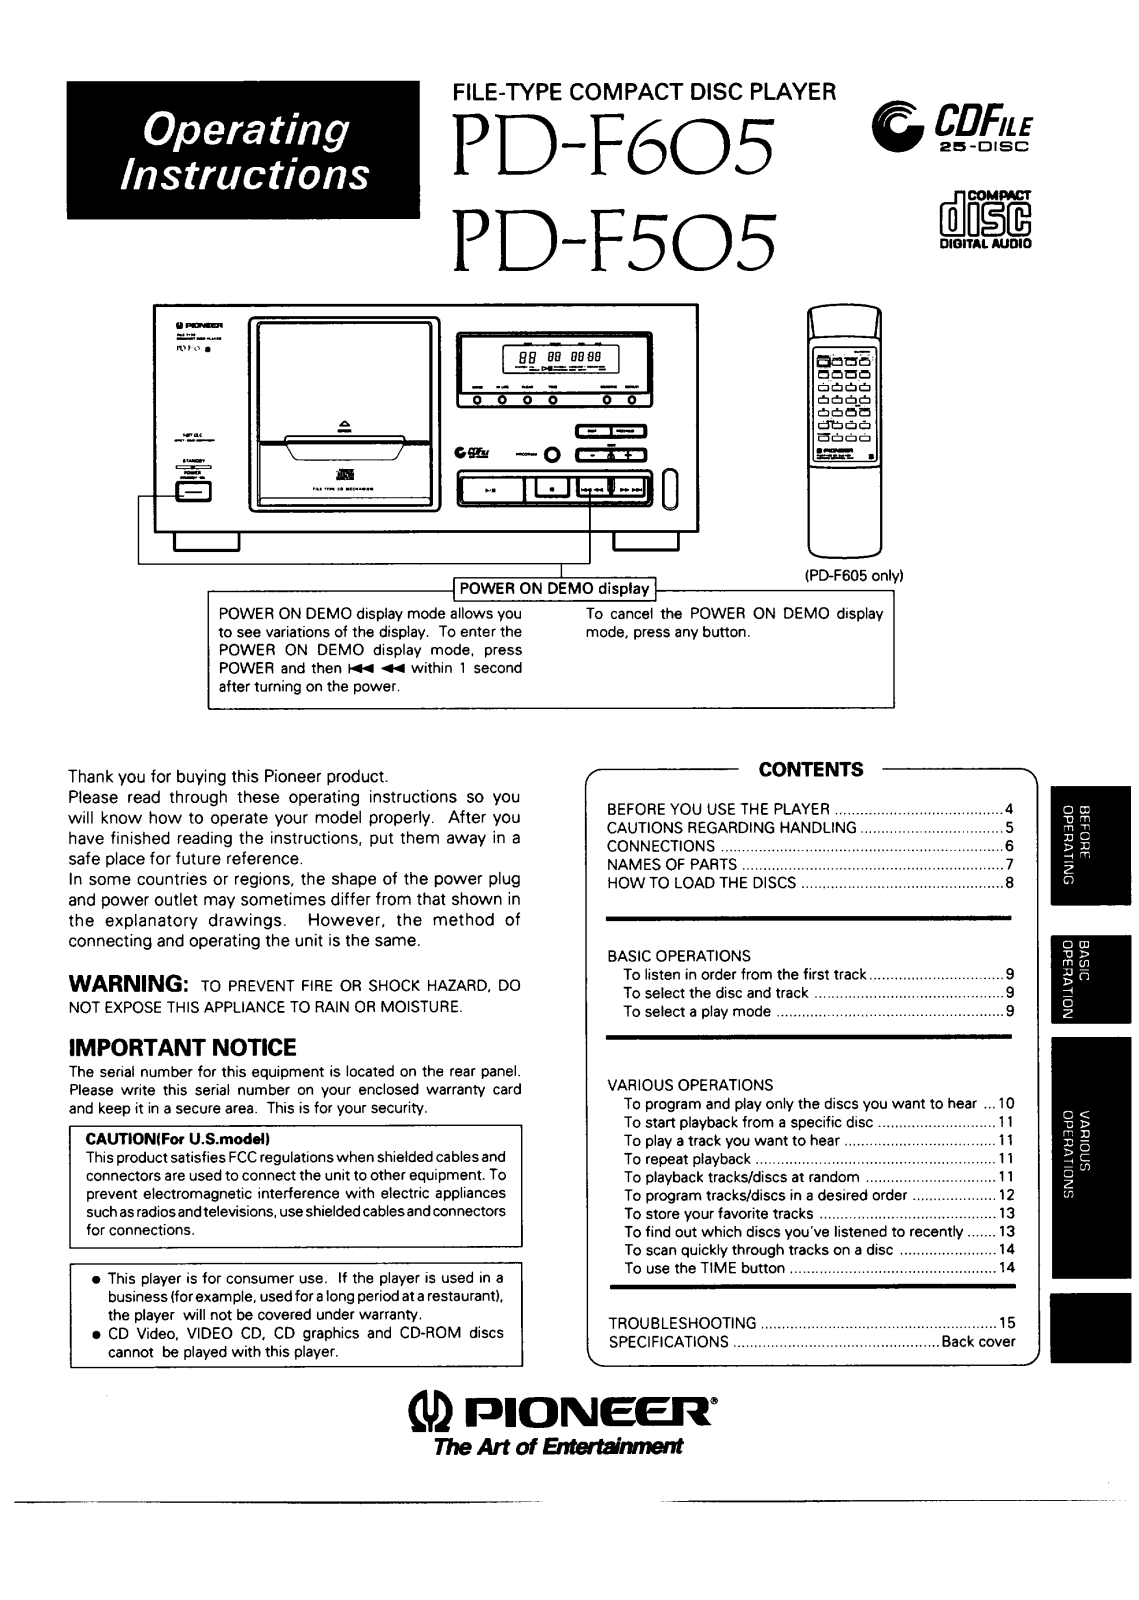 Pioneer PDF-605 Owners manual